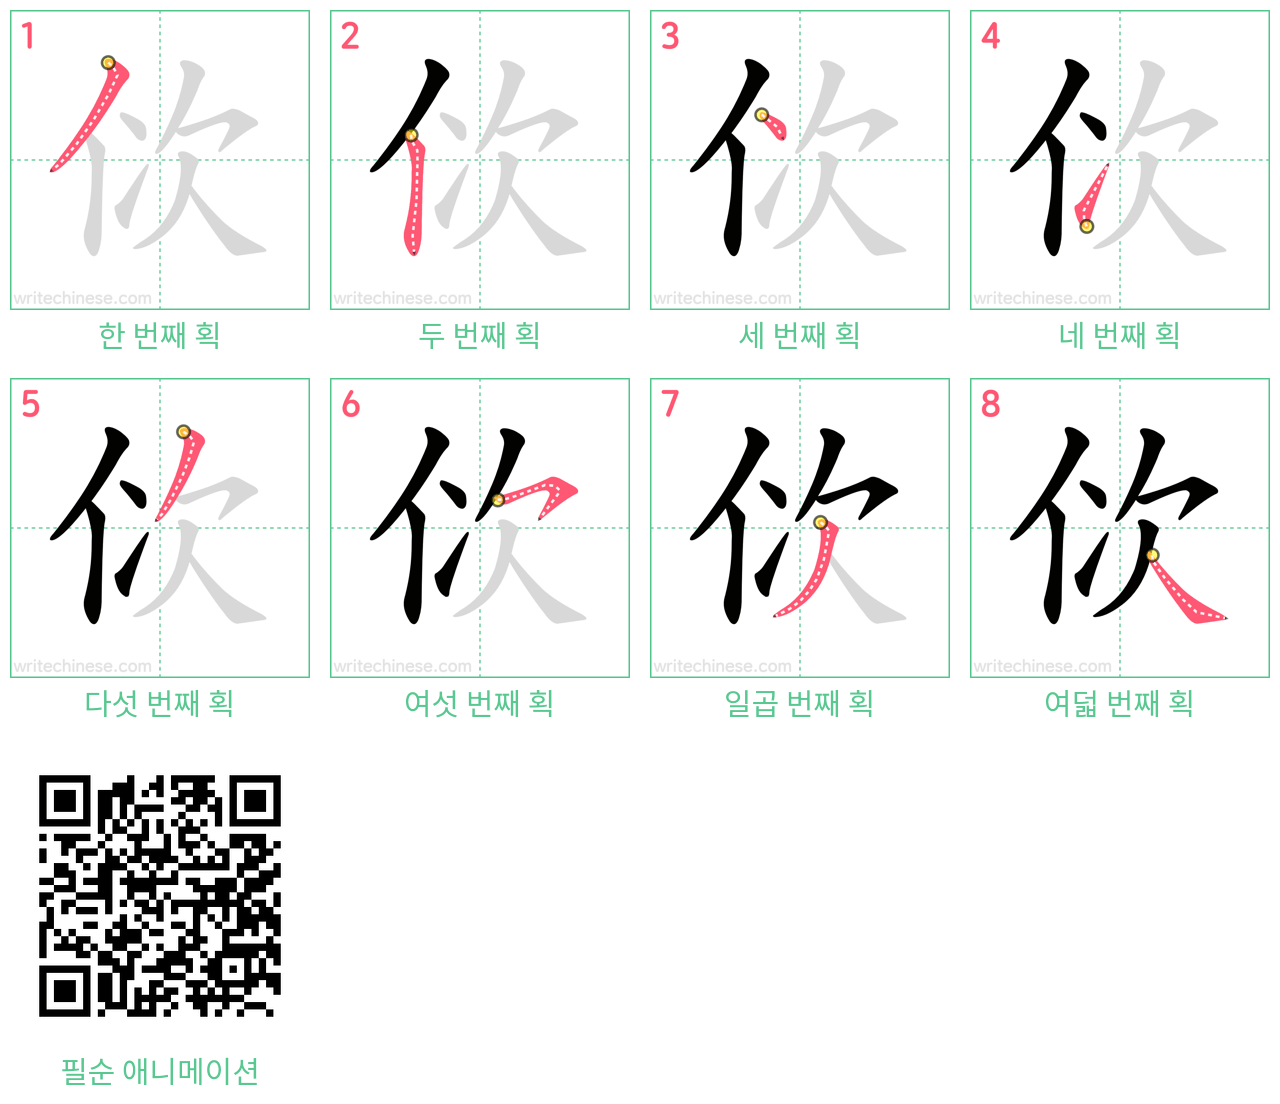 佽 step-by-step stroke order diagrams